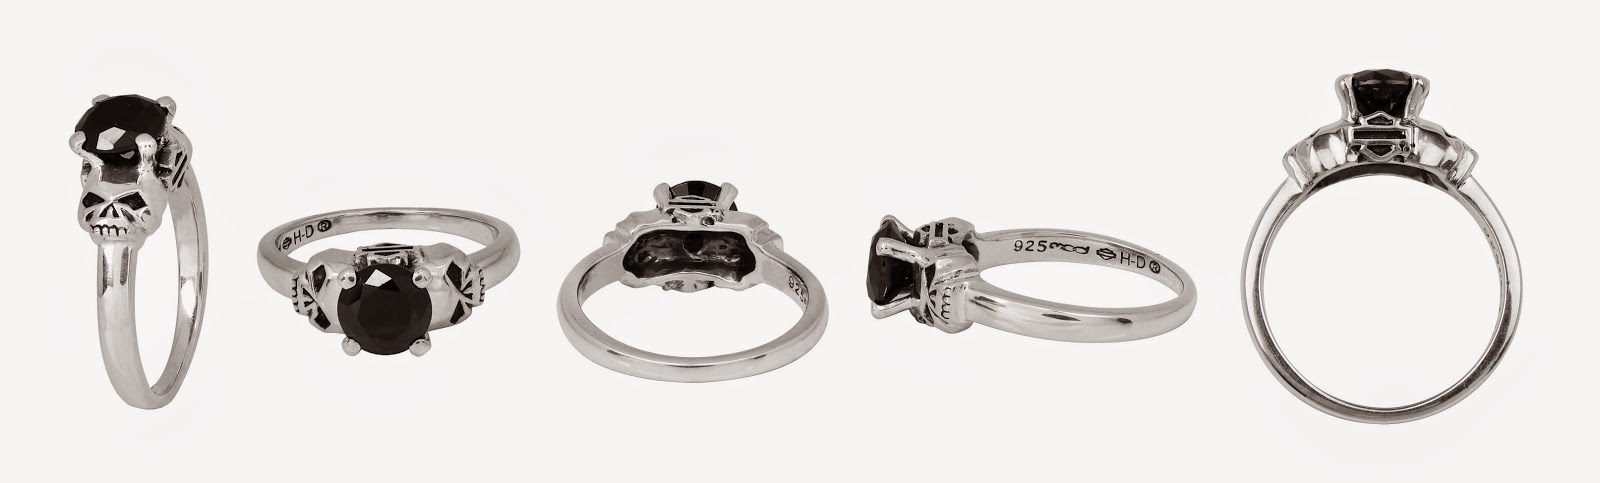 http://www.adventureharley.com/harley-davidson-womens-skull-ring-sterling-silver-double-sided-skull-stone-ring